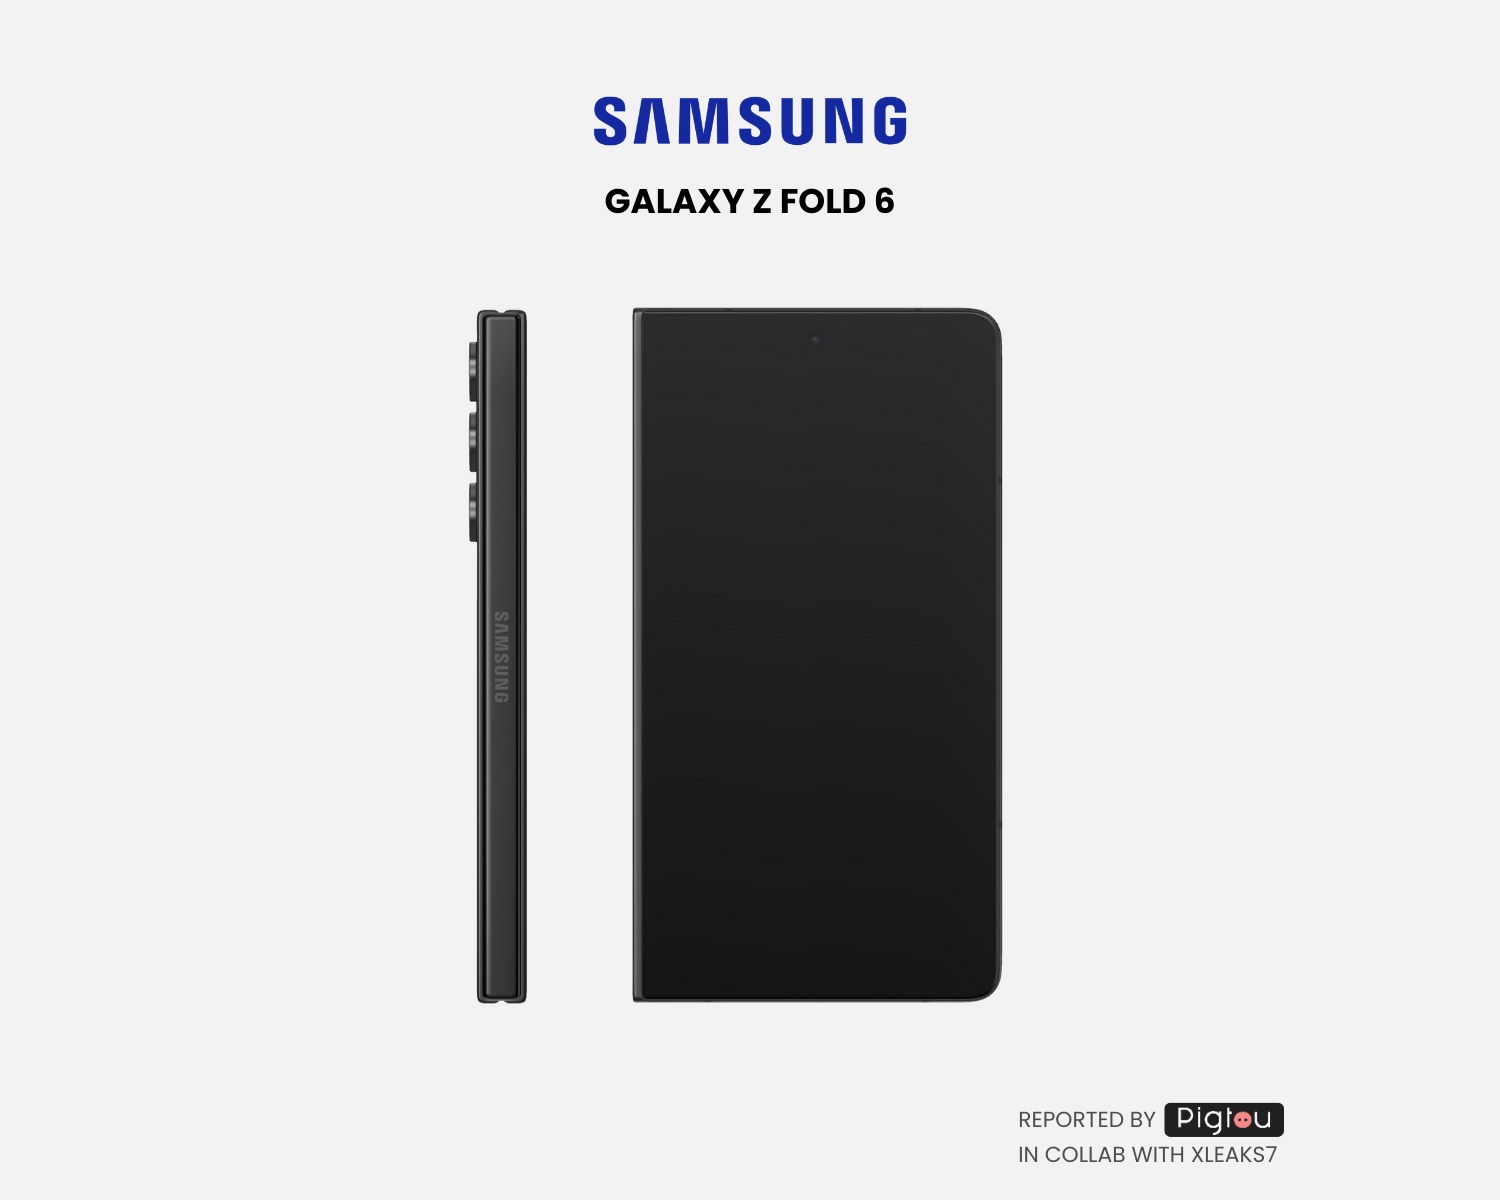 2.Samsung-Galaxy-Z-Fold-6.jpg